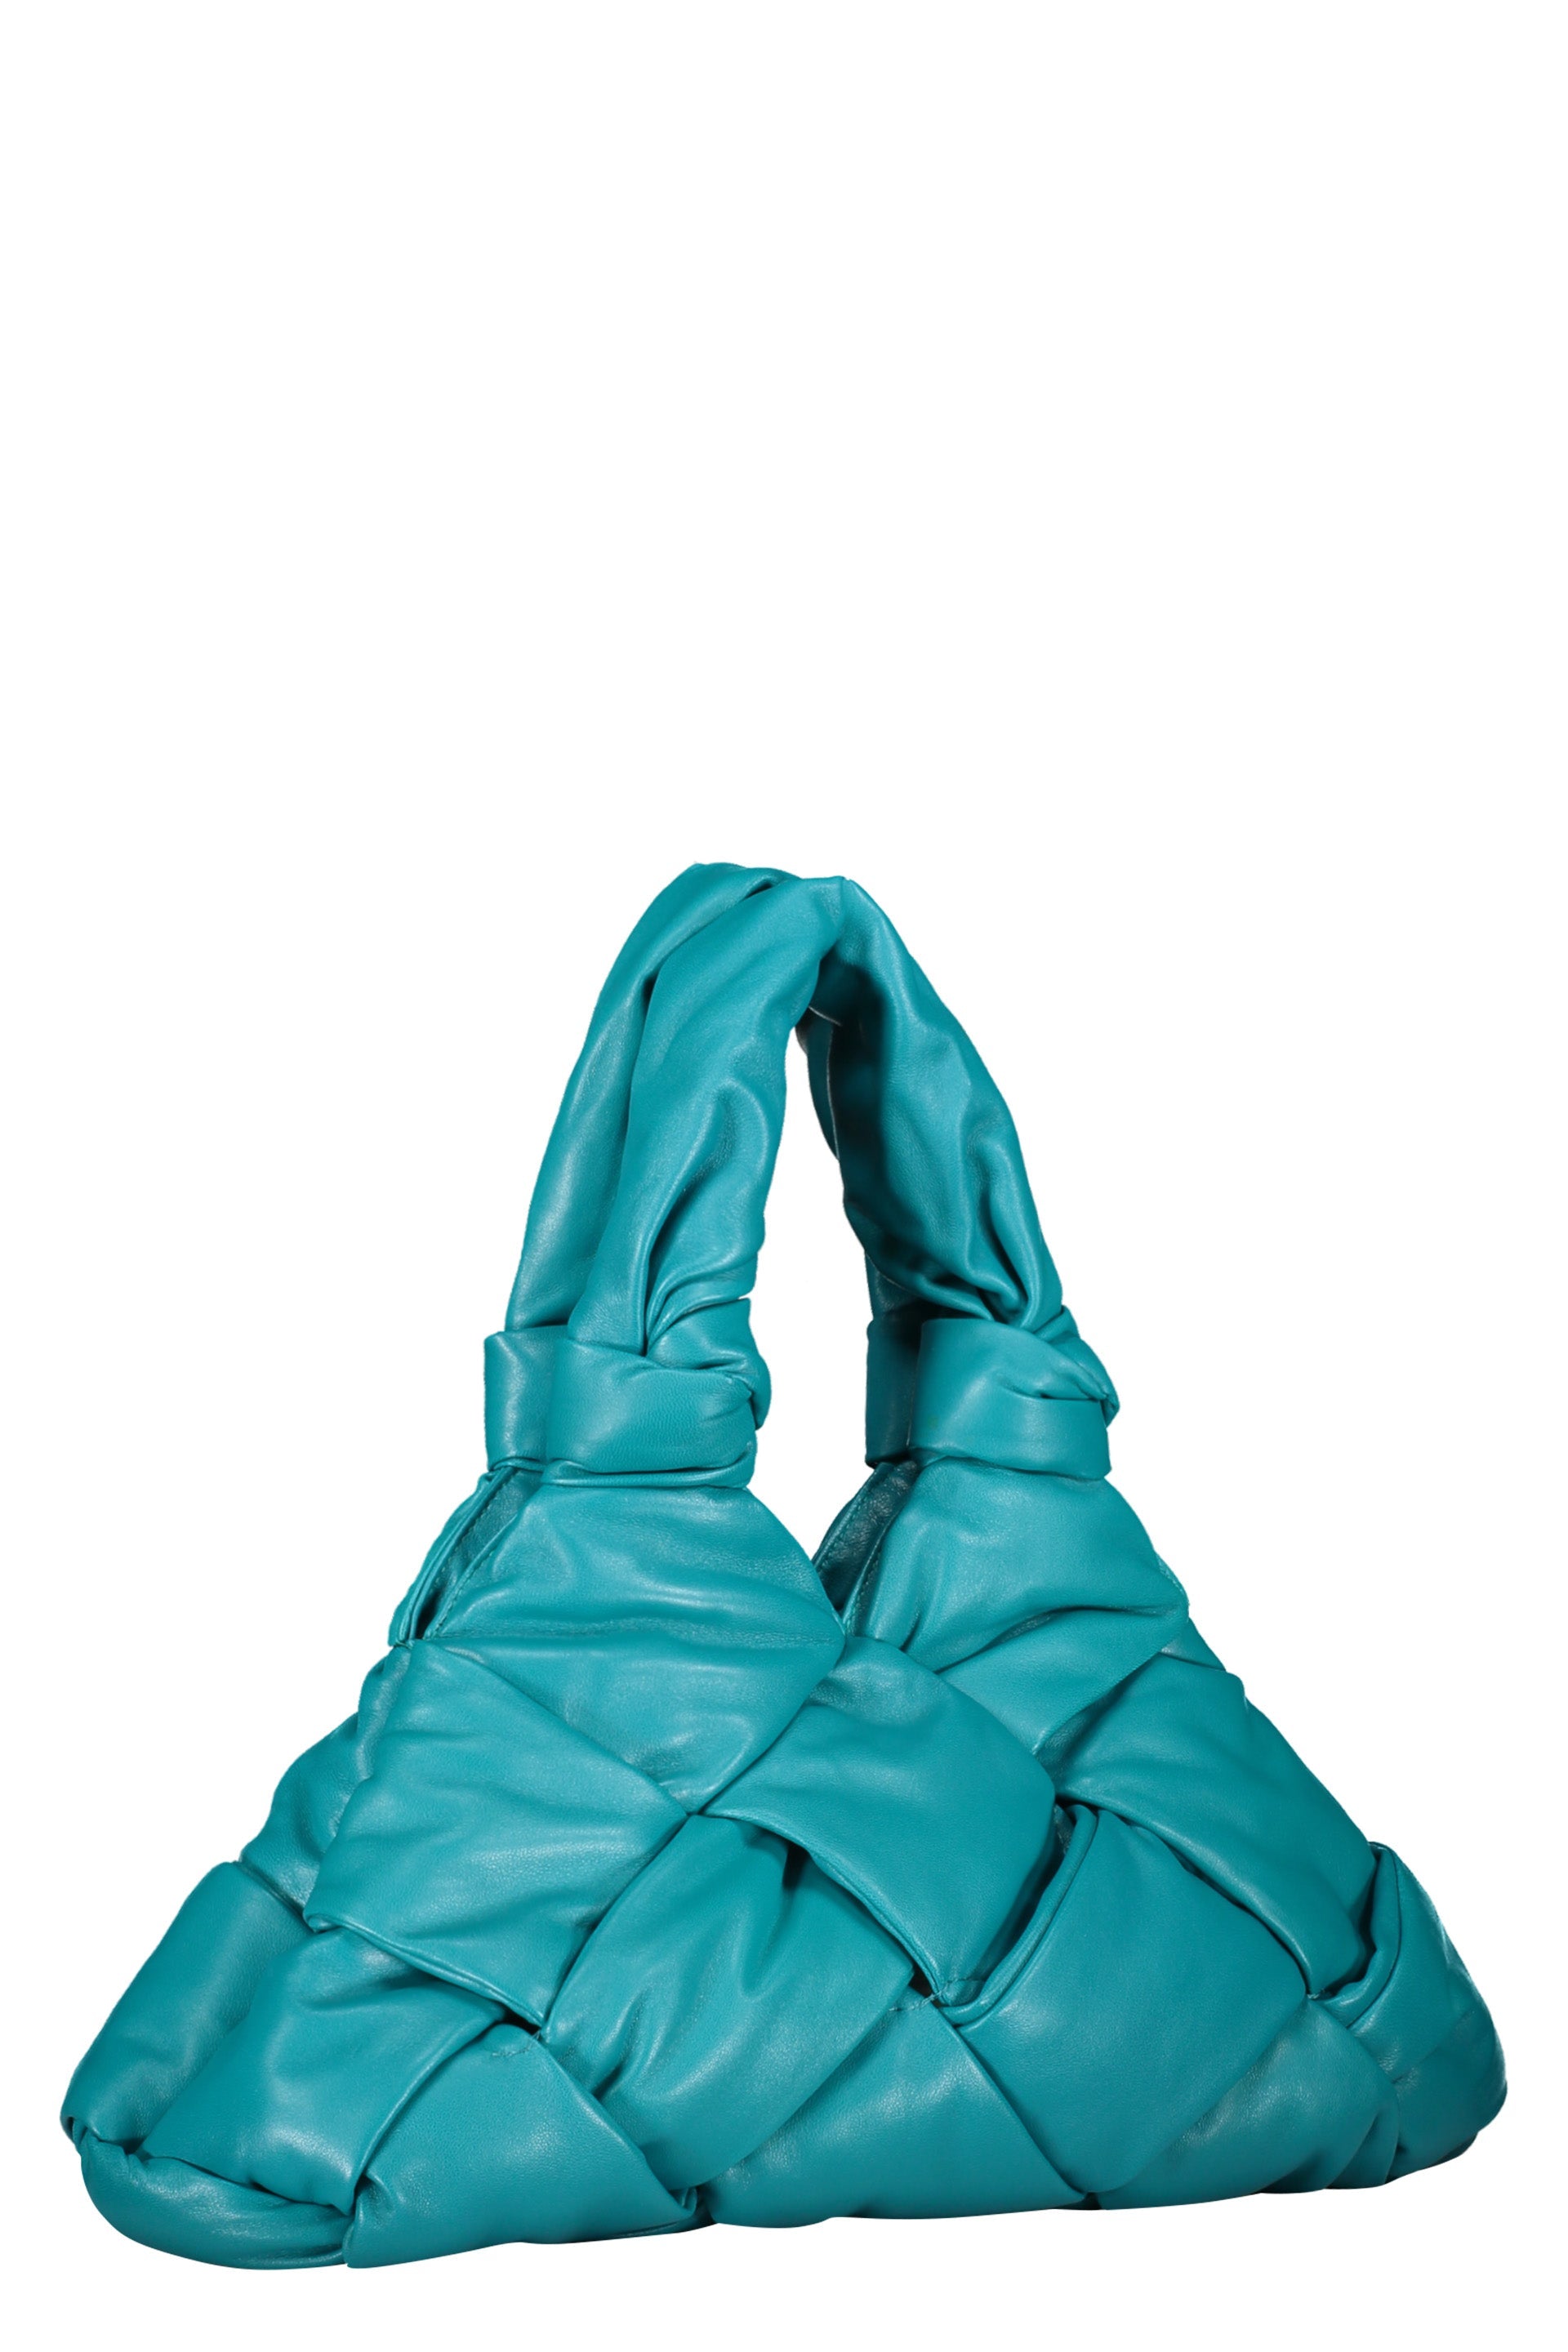 Padded Lock leather shoulder bag-Bottega Veneta-OUTLET-SALE-TU-ARCHIVIST